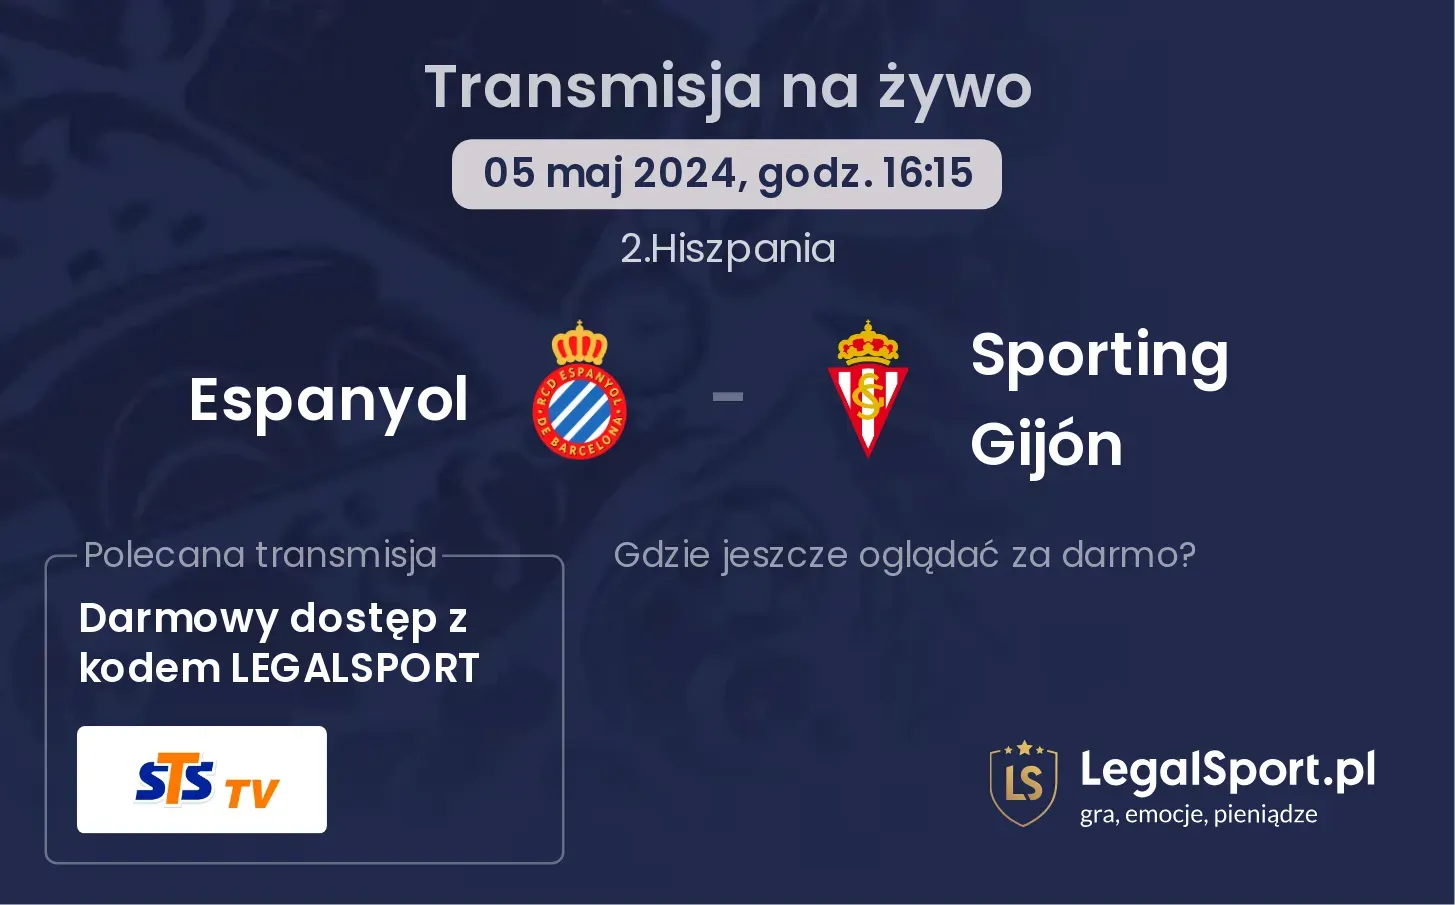 Espanyol - Sporting Gijón